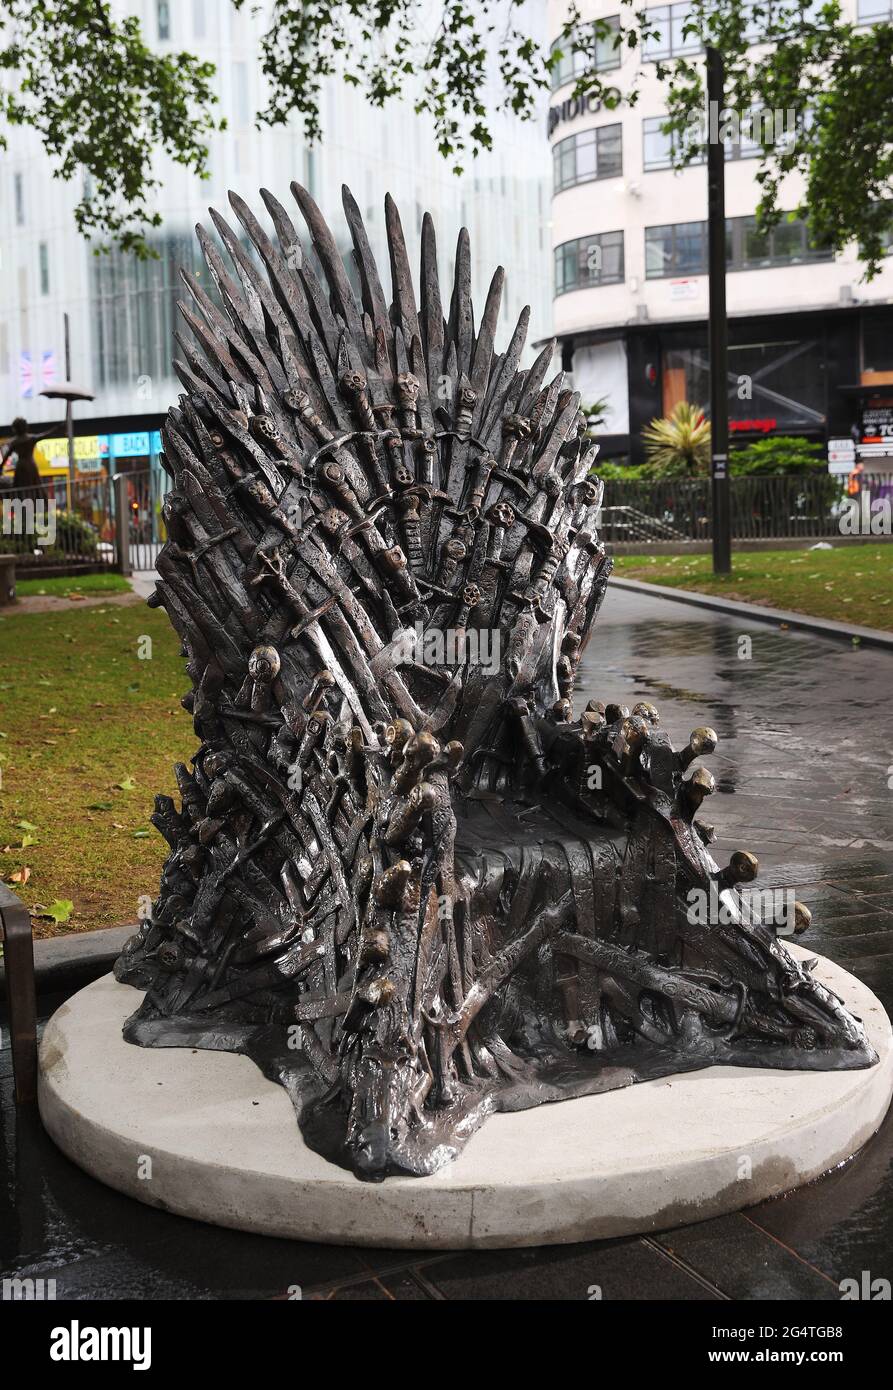 Londra, Regno Unito. La sedia del Trono di Spade, vista nella serie  televisiva HBO, viene visualizzata al pubblico in piazza LondonÕs  Leicester. Commemora 10 anni da quando il programma televisivo Game of